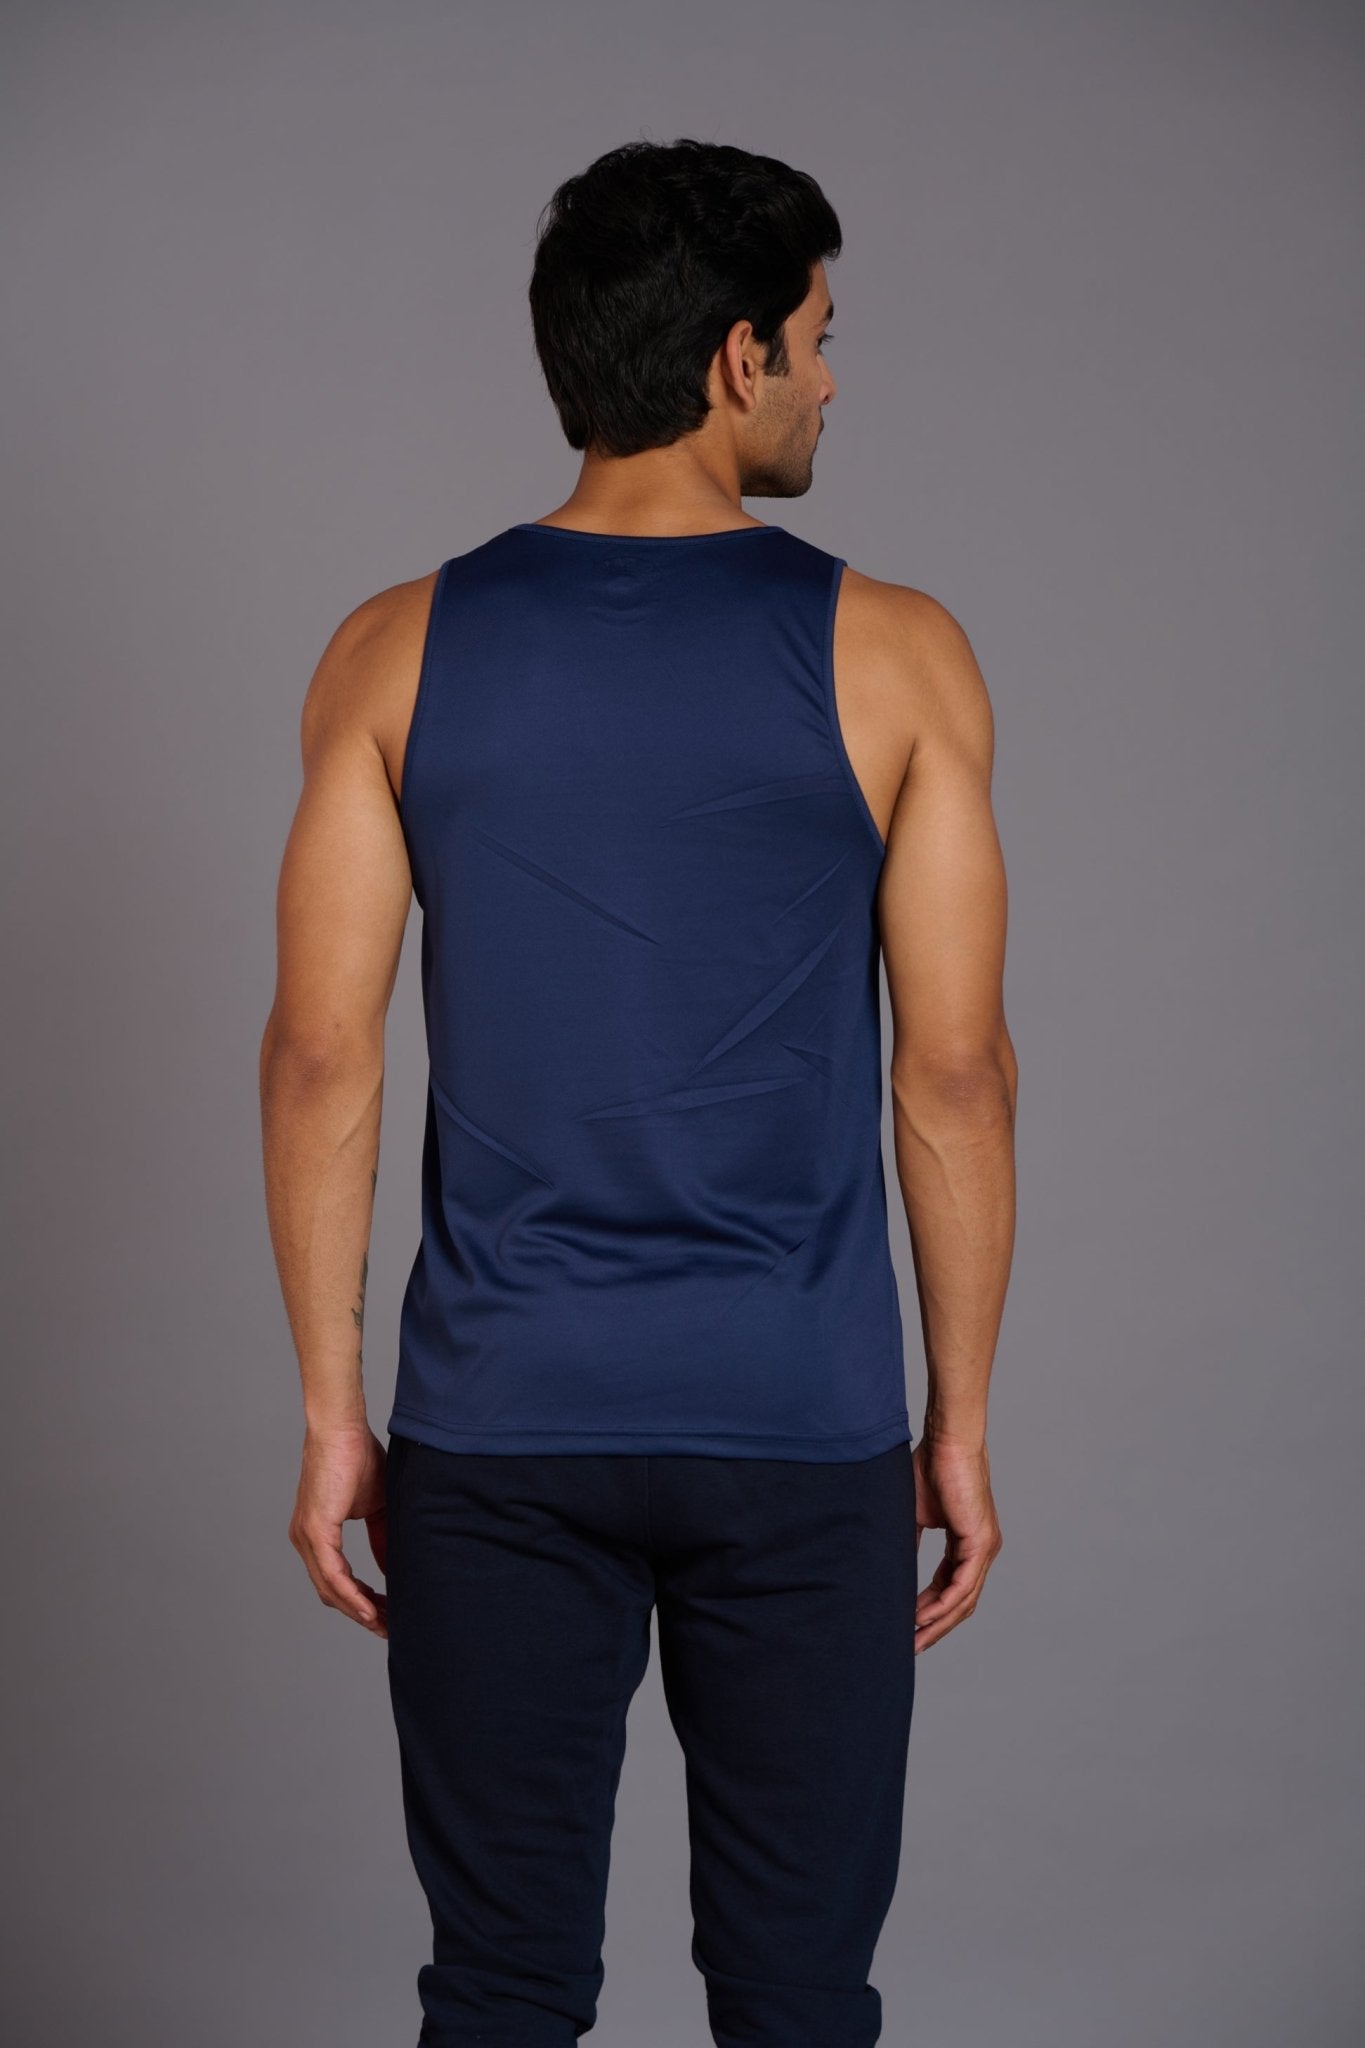 Devil Fit Printed Navy Blue Vest (Activewear) for Men - Go Devil